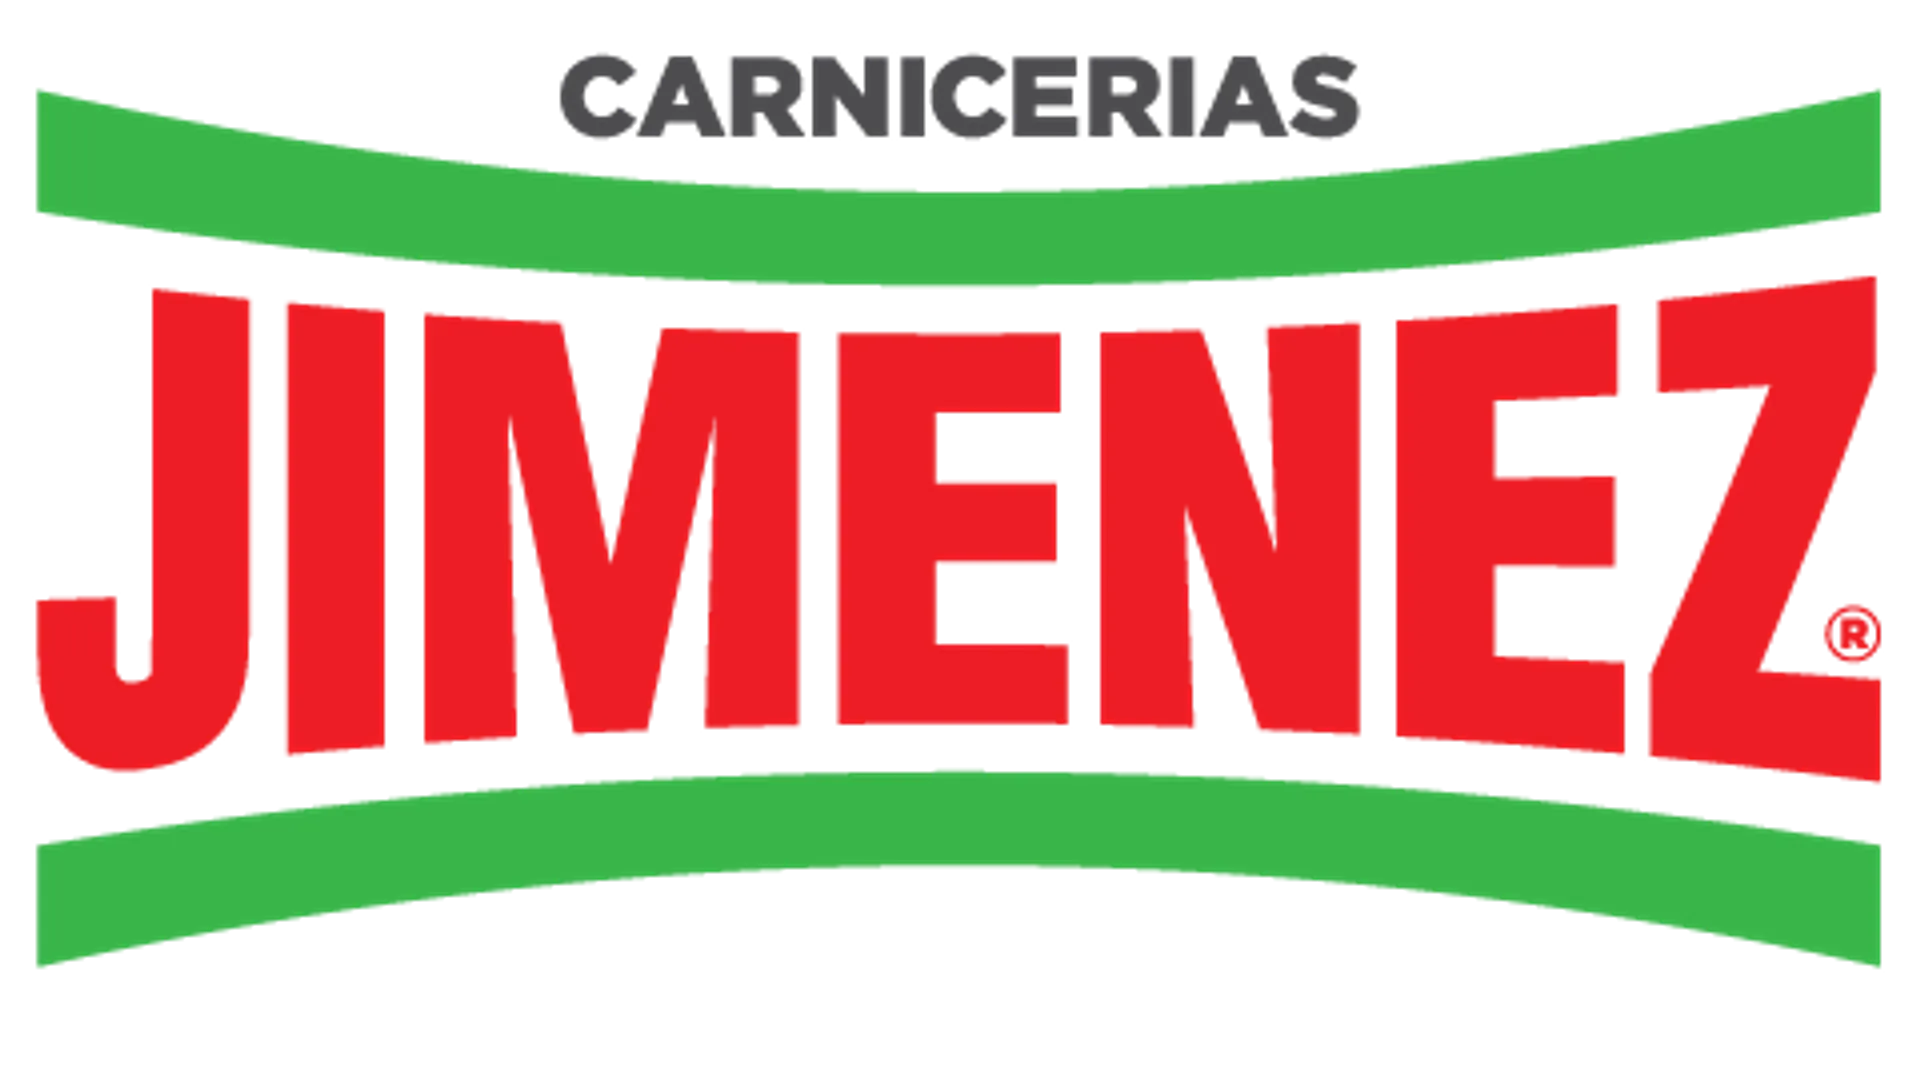 CARNICERÍA JIMENEZ logo de catálogo